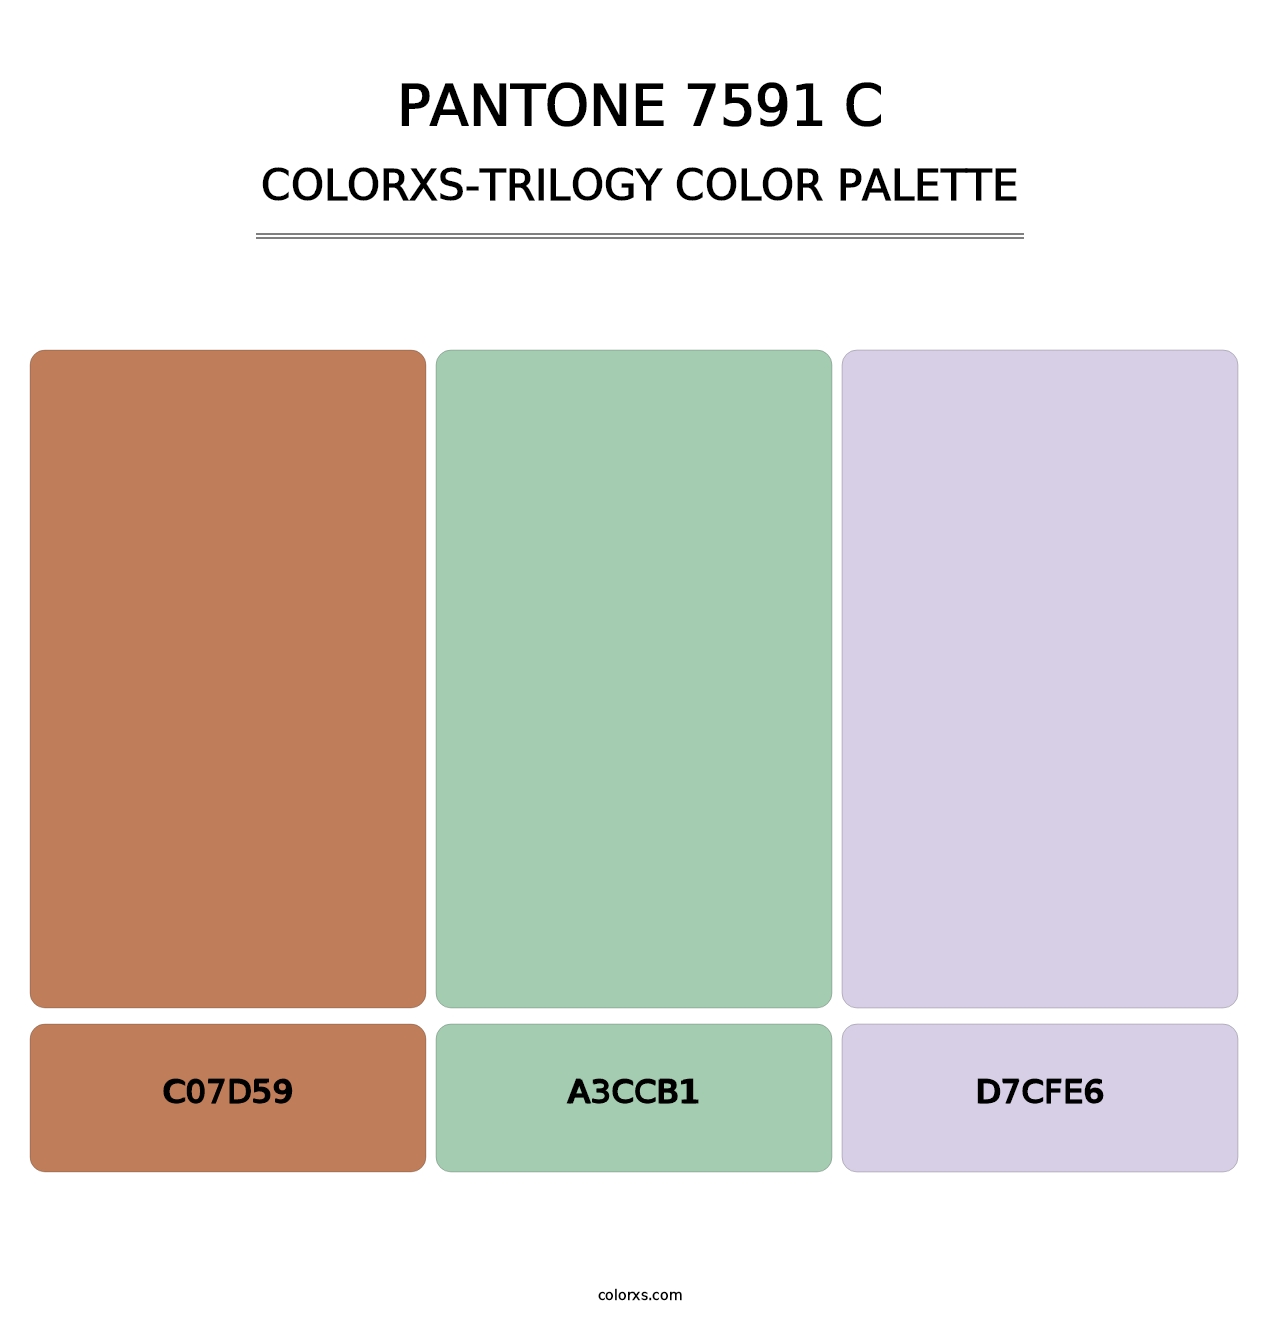 PANTONE 7591 C - Colorxs Trilogy Palette